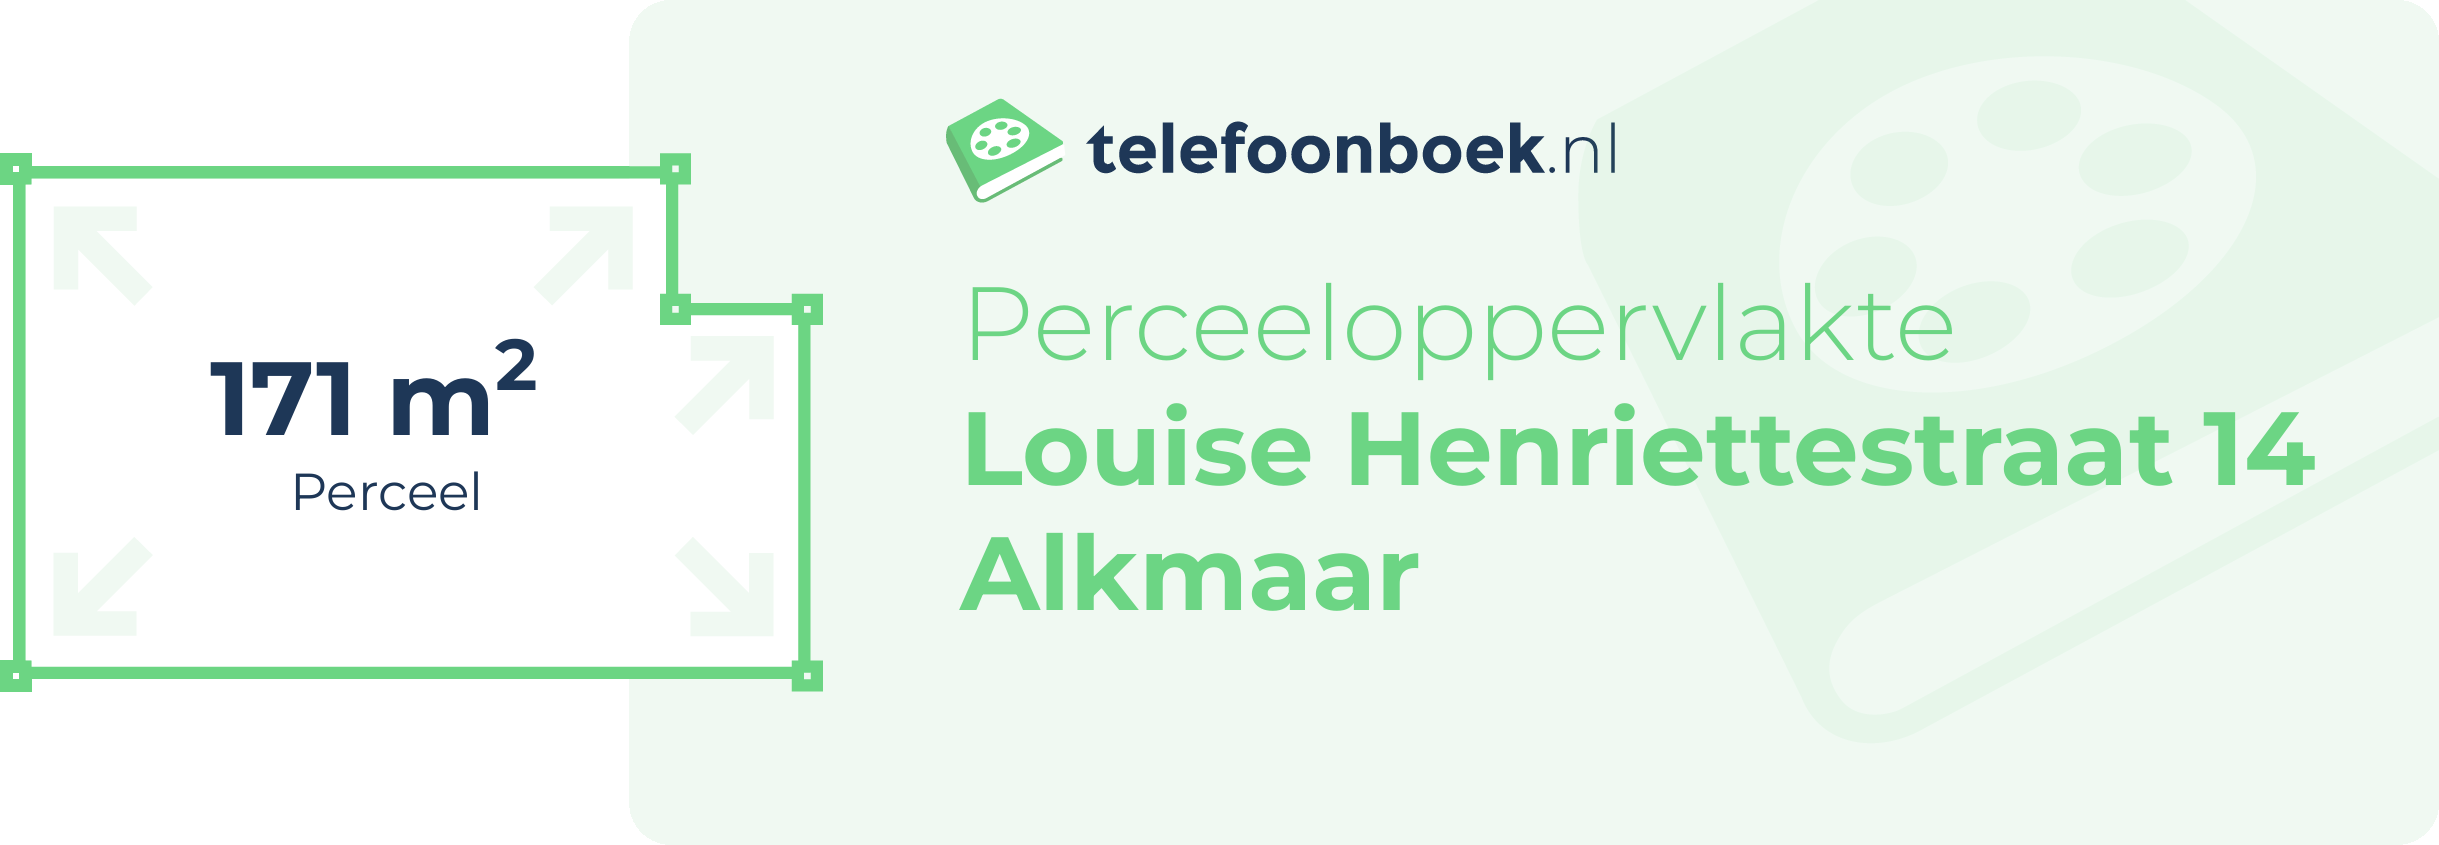 Perceeloppervlakte Louise Henriettestraat 14 Alkmaar